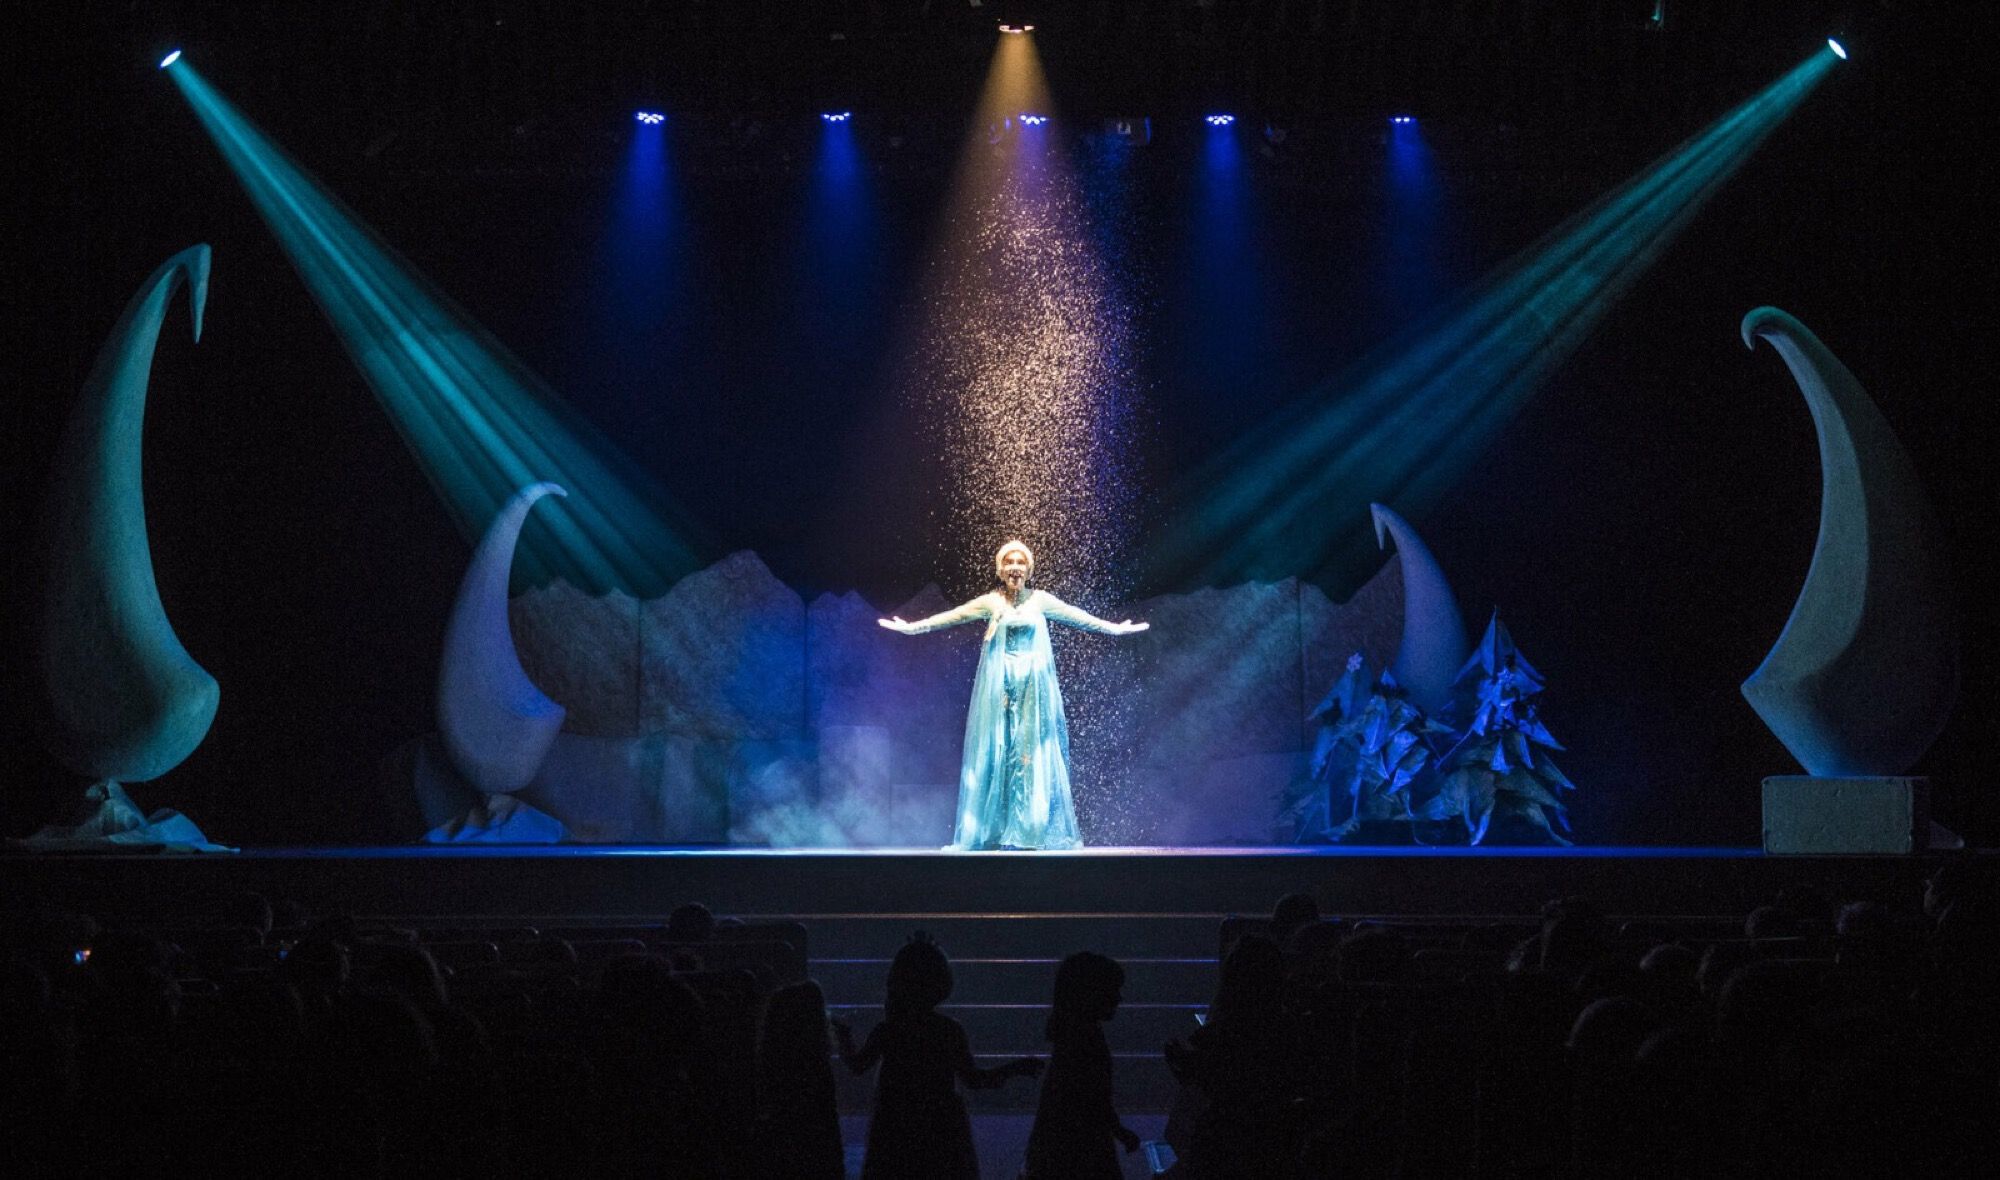 El musical 'La reina del hielo' inspirado en Frozen, este domingo en el Teatro Juan Luis Galiardo